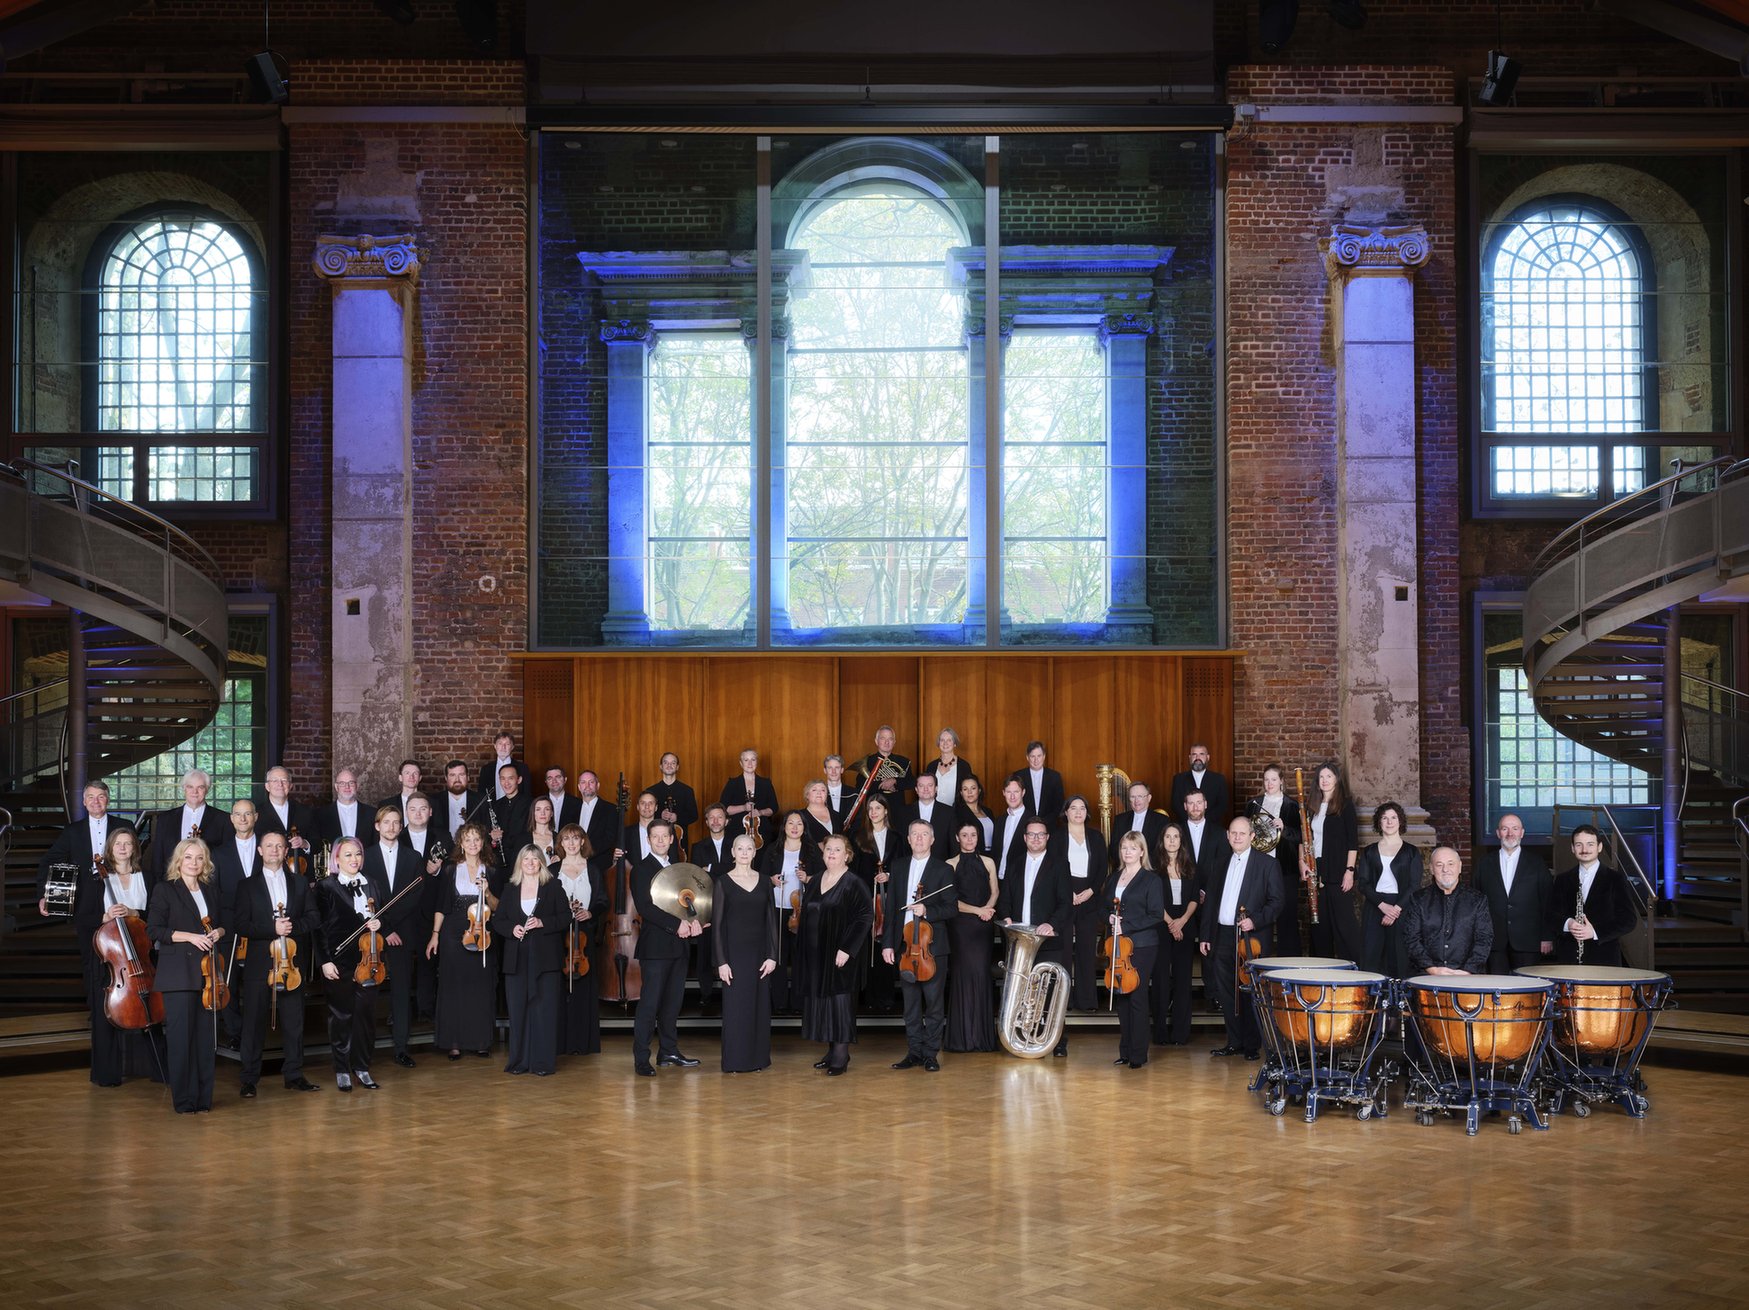 skupinska slika orkestra v poslopju z velikimi okni